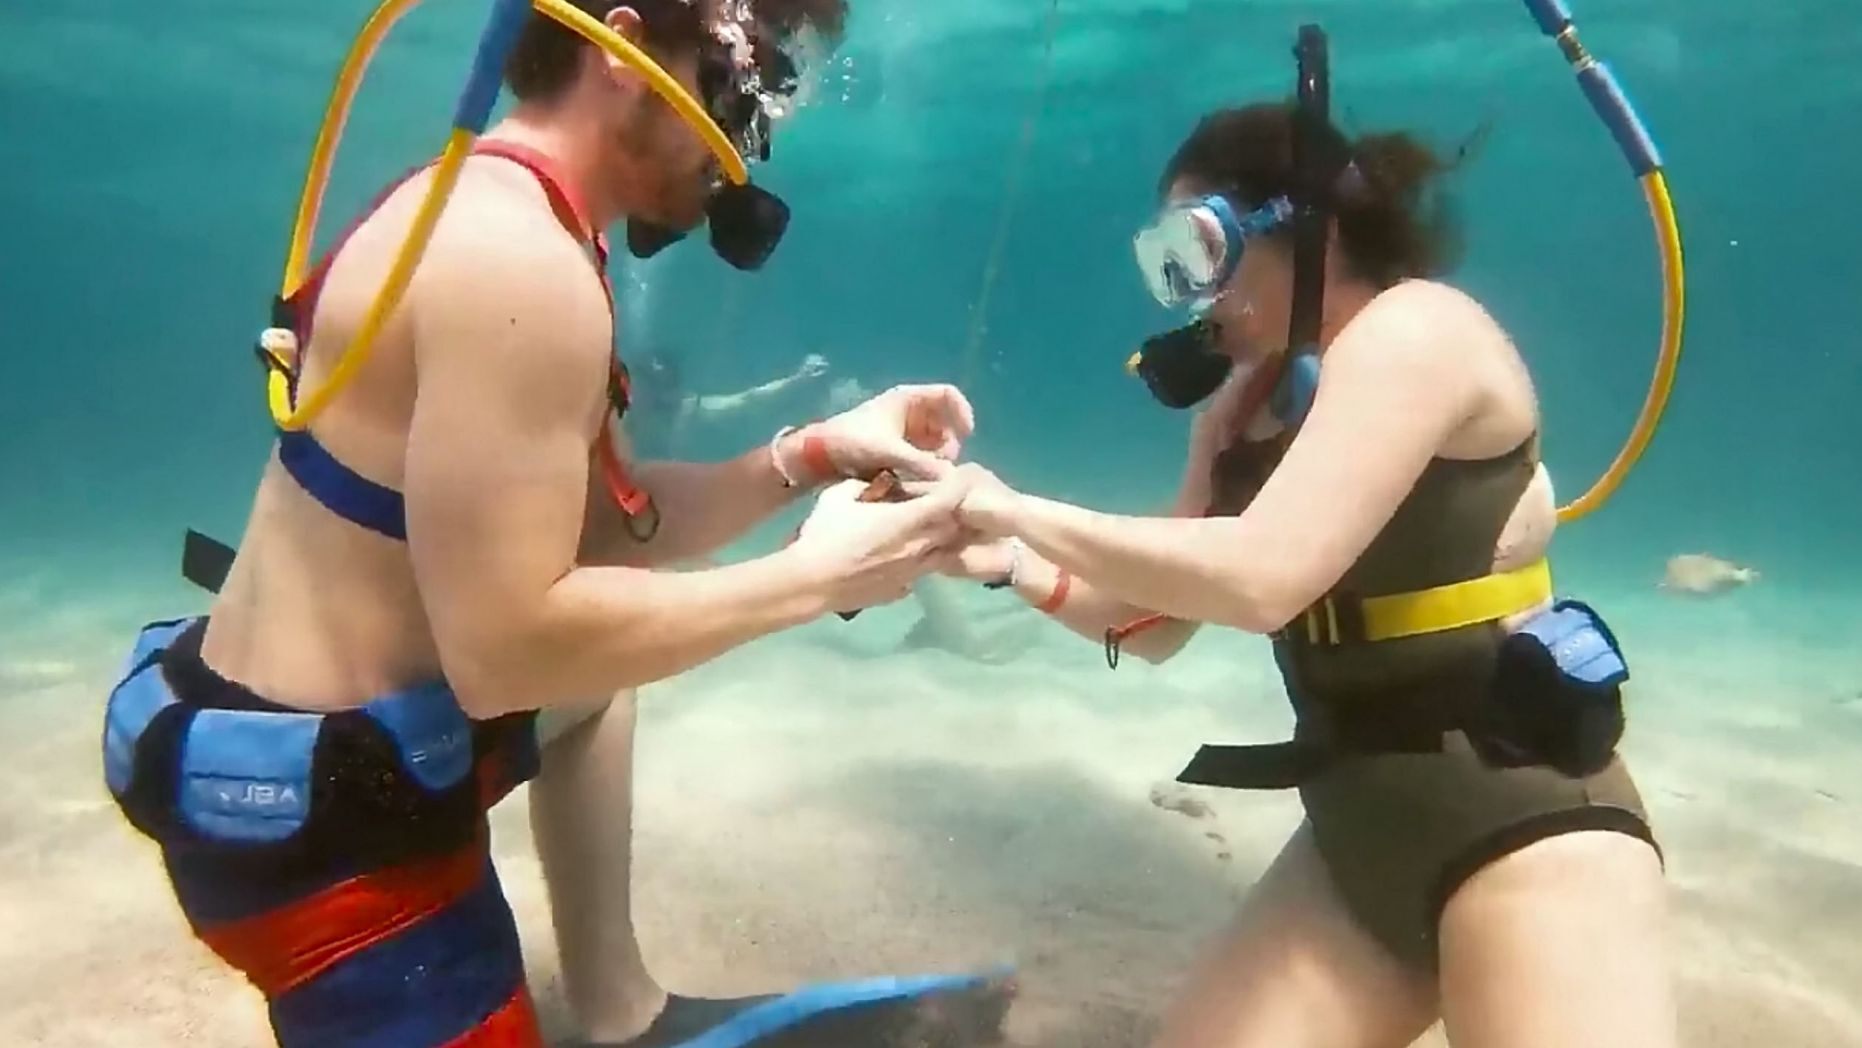 شاب يقدم عرض زواج لصديقته تحت الماء  (1)